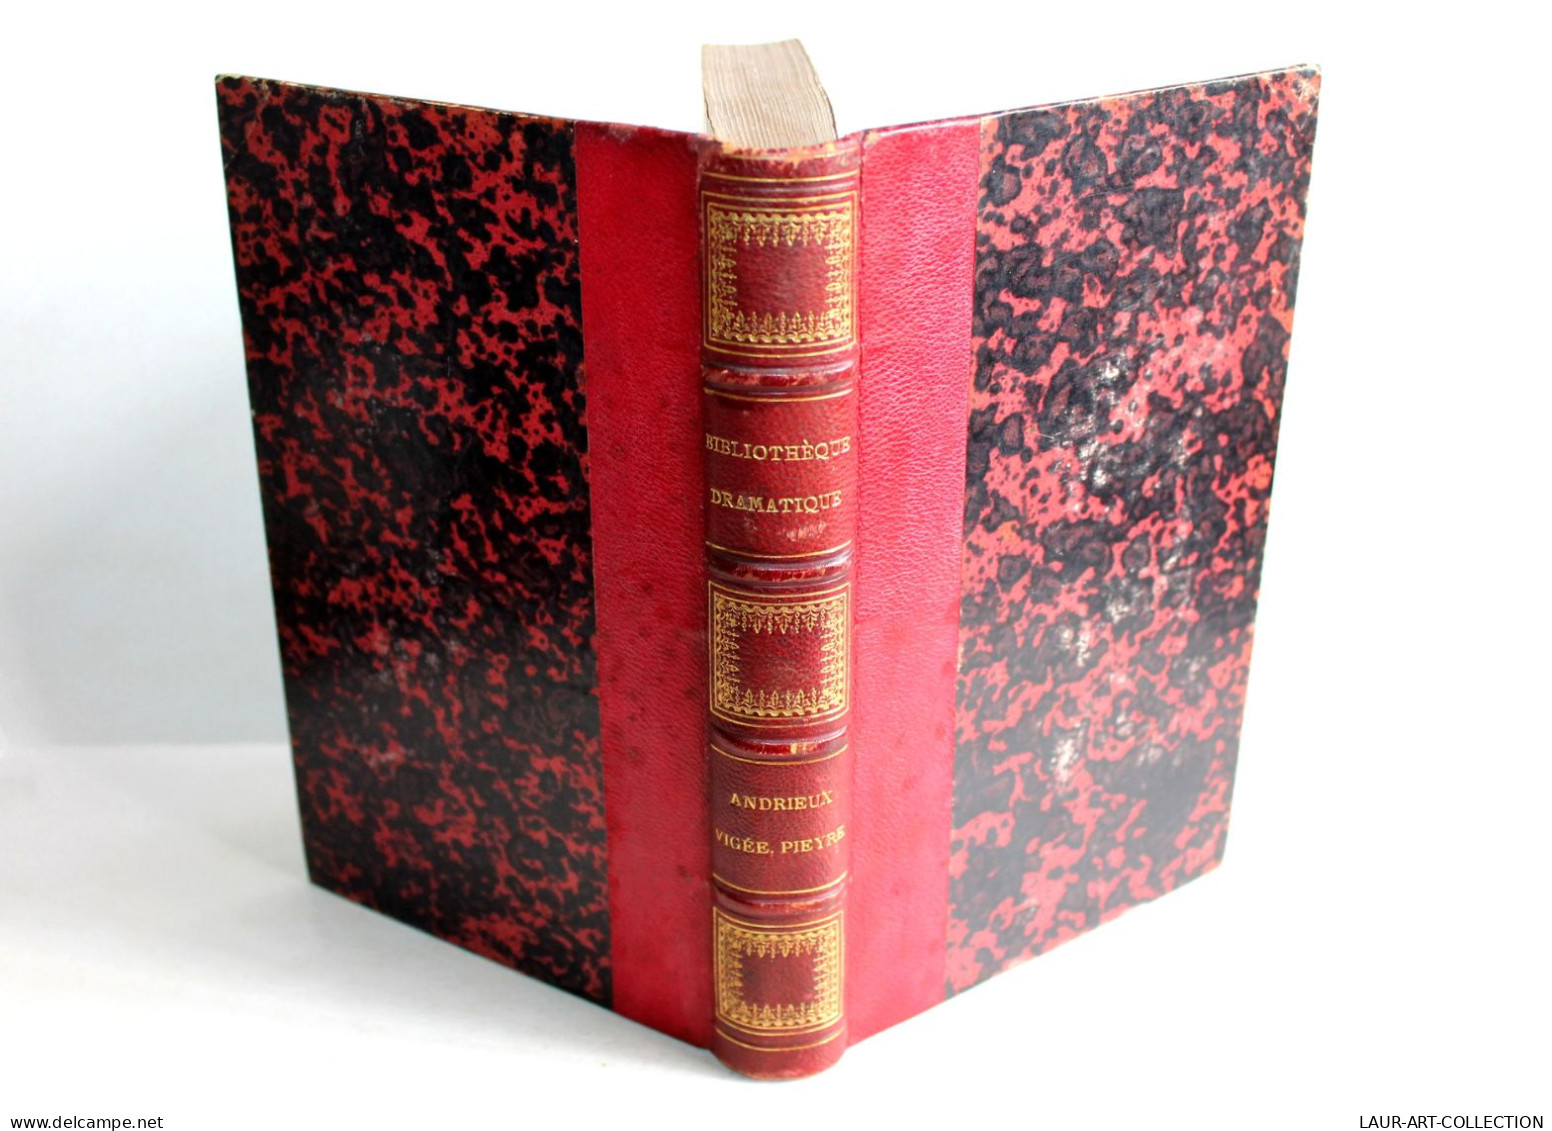 BIBLIOTHEQUE DRAMATIQUE Ou REPERTOIRE UNIVERSEL THEATRE FRANCAIS Par NODIER 1824 / ANCIEN LIVRE XIXe SIECLE (1803.163) - French Authors